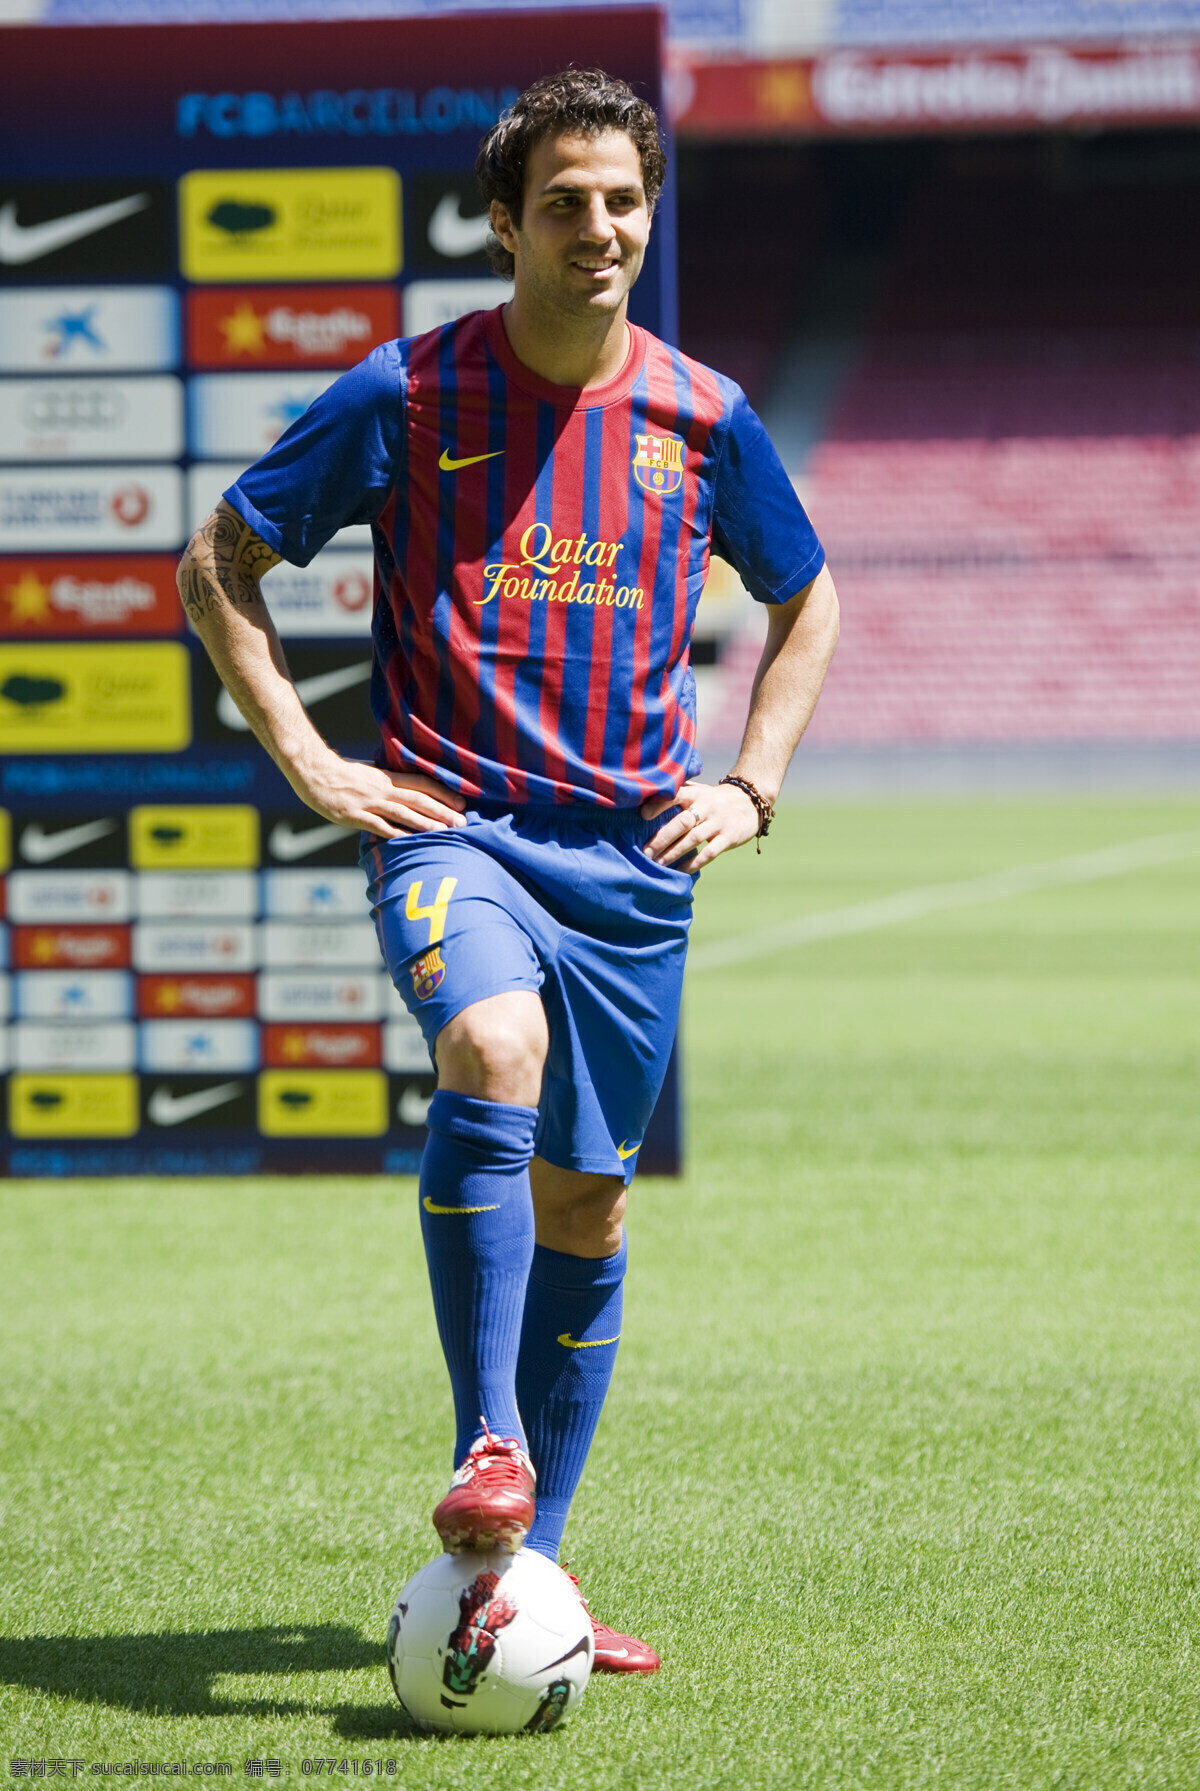 法布雷加斯 fabregas 巴萨 巴塞罗那 足球明星 西甲 欧冠 欧洲杯 barcelona 足球 明星偶像 人物图库